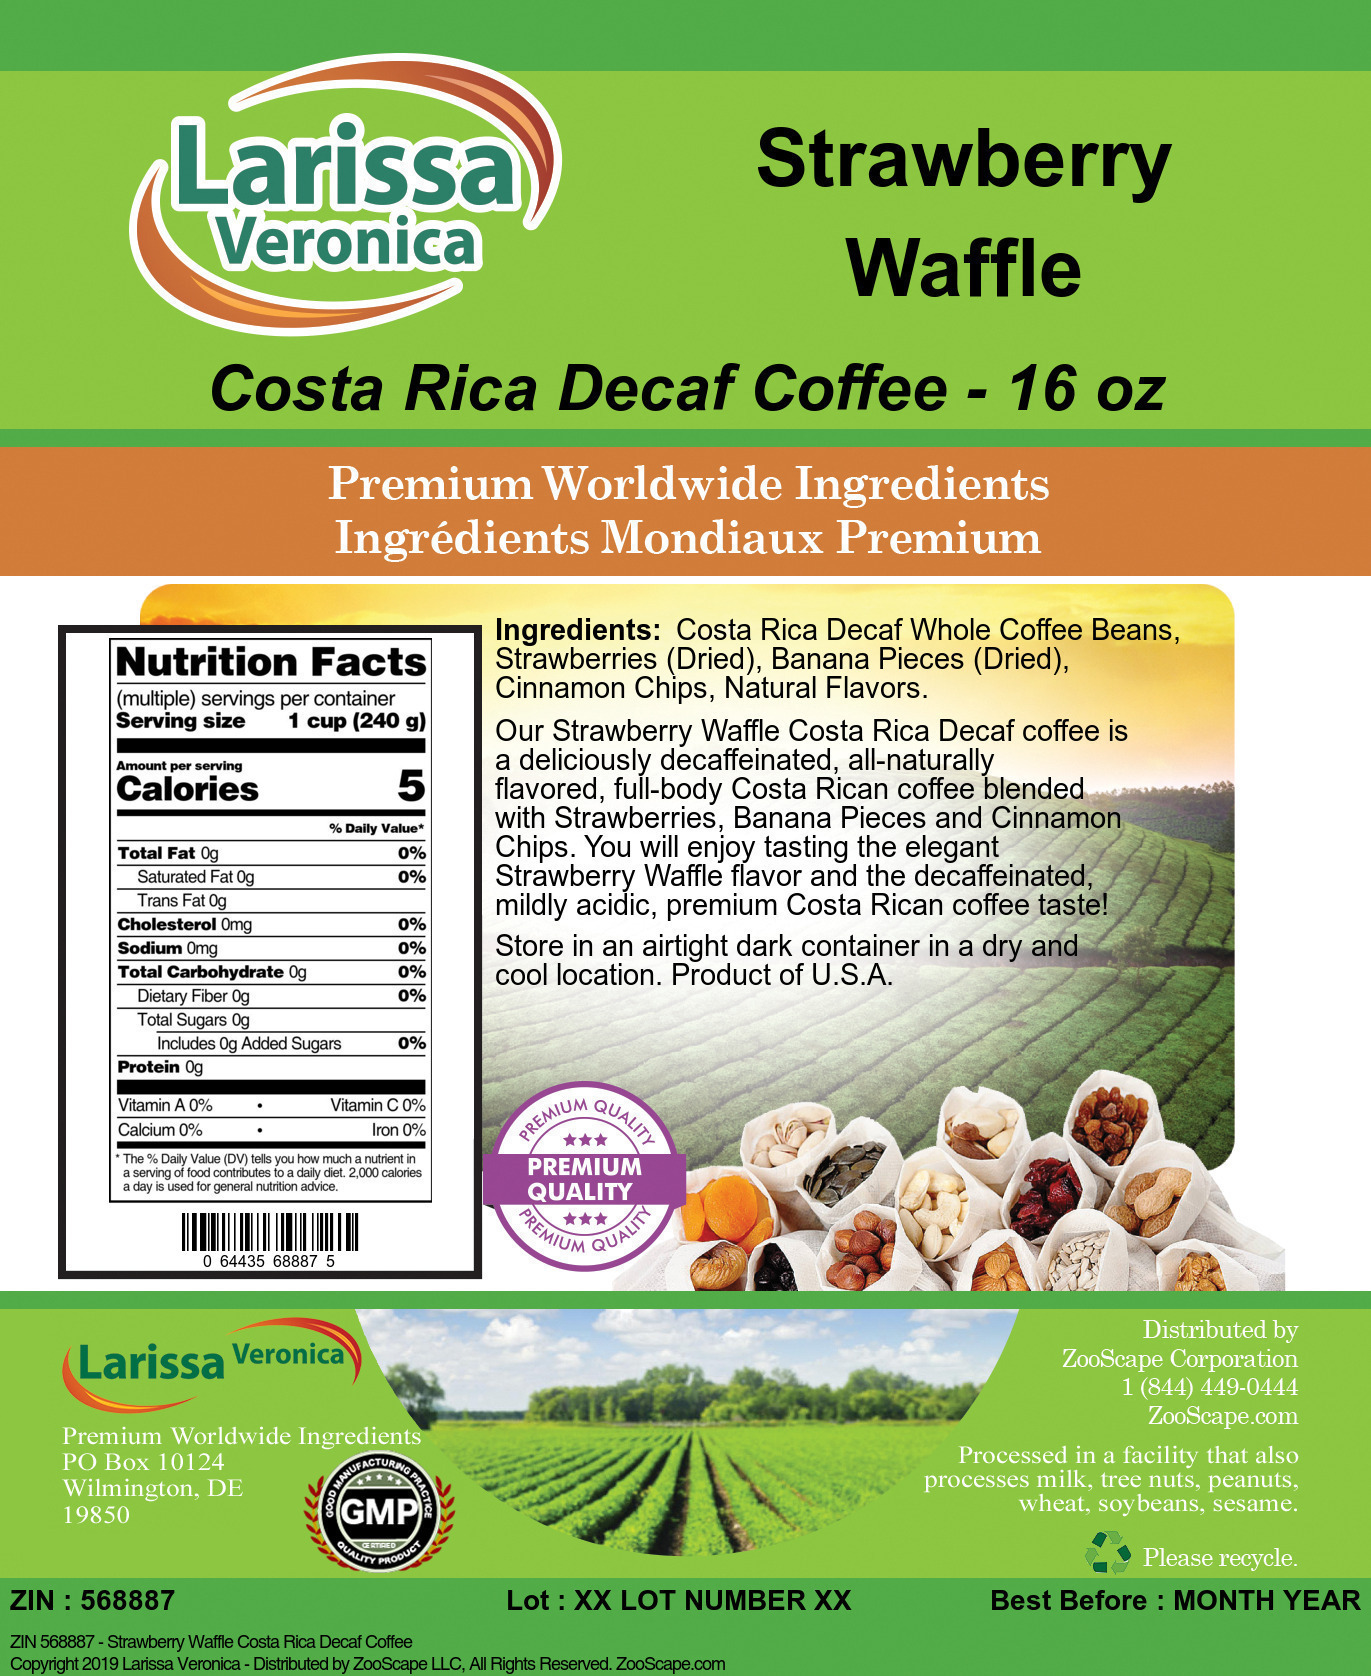 Strawberry Waffle Costa Rica Decaf Coffee - Label